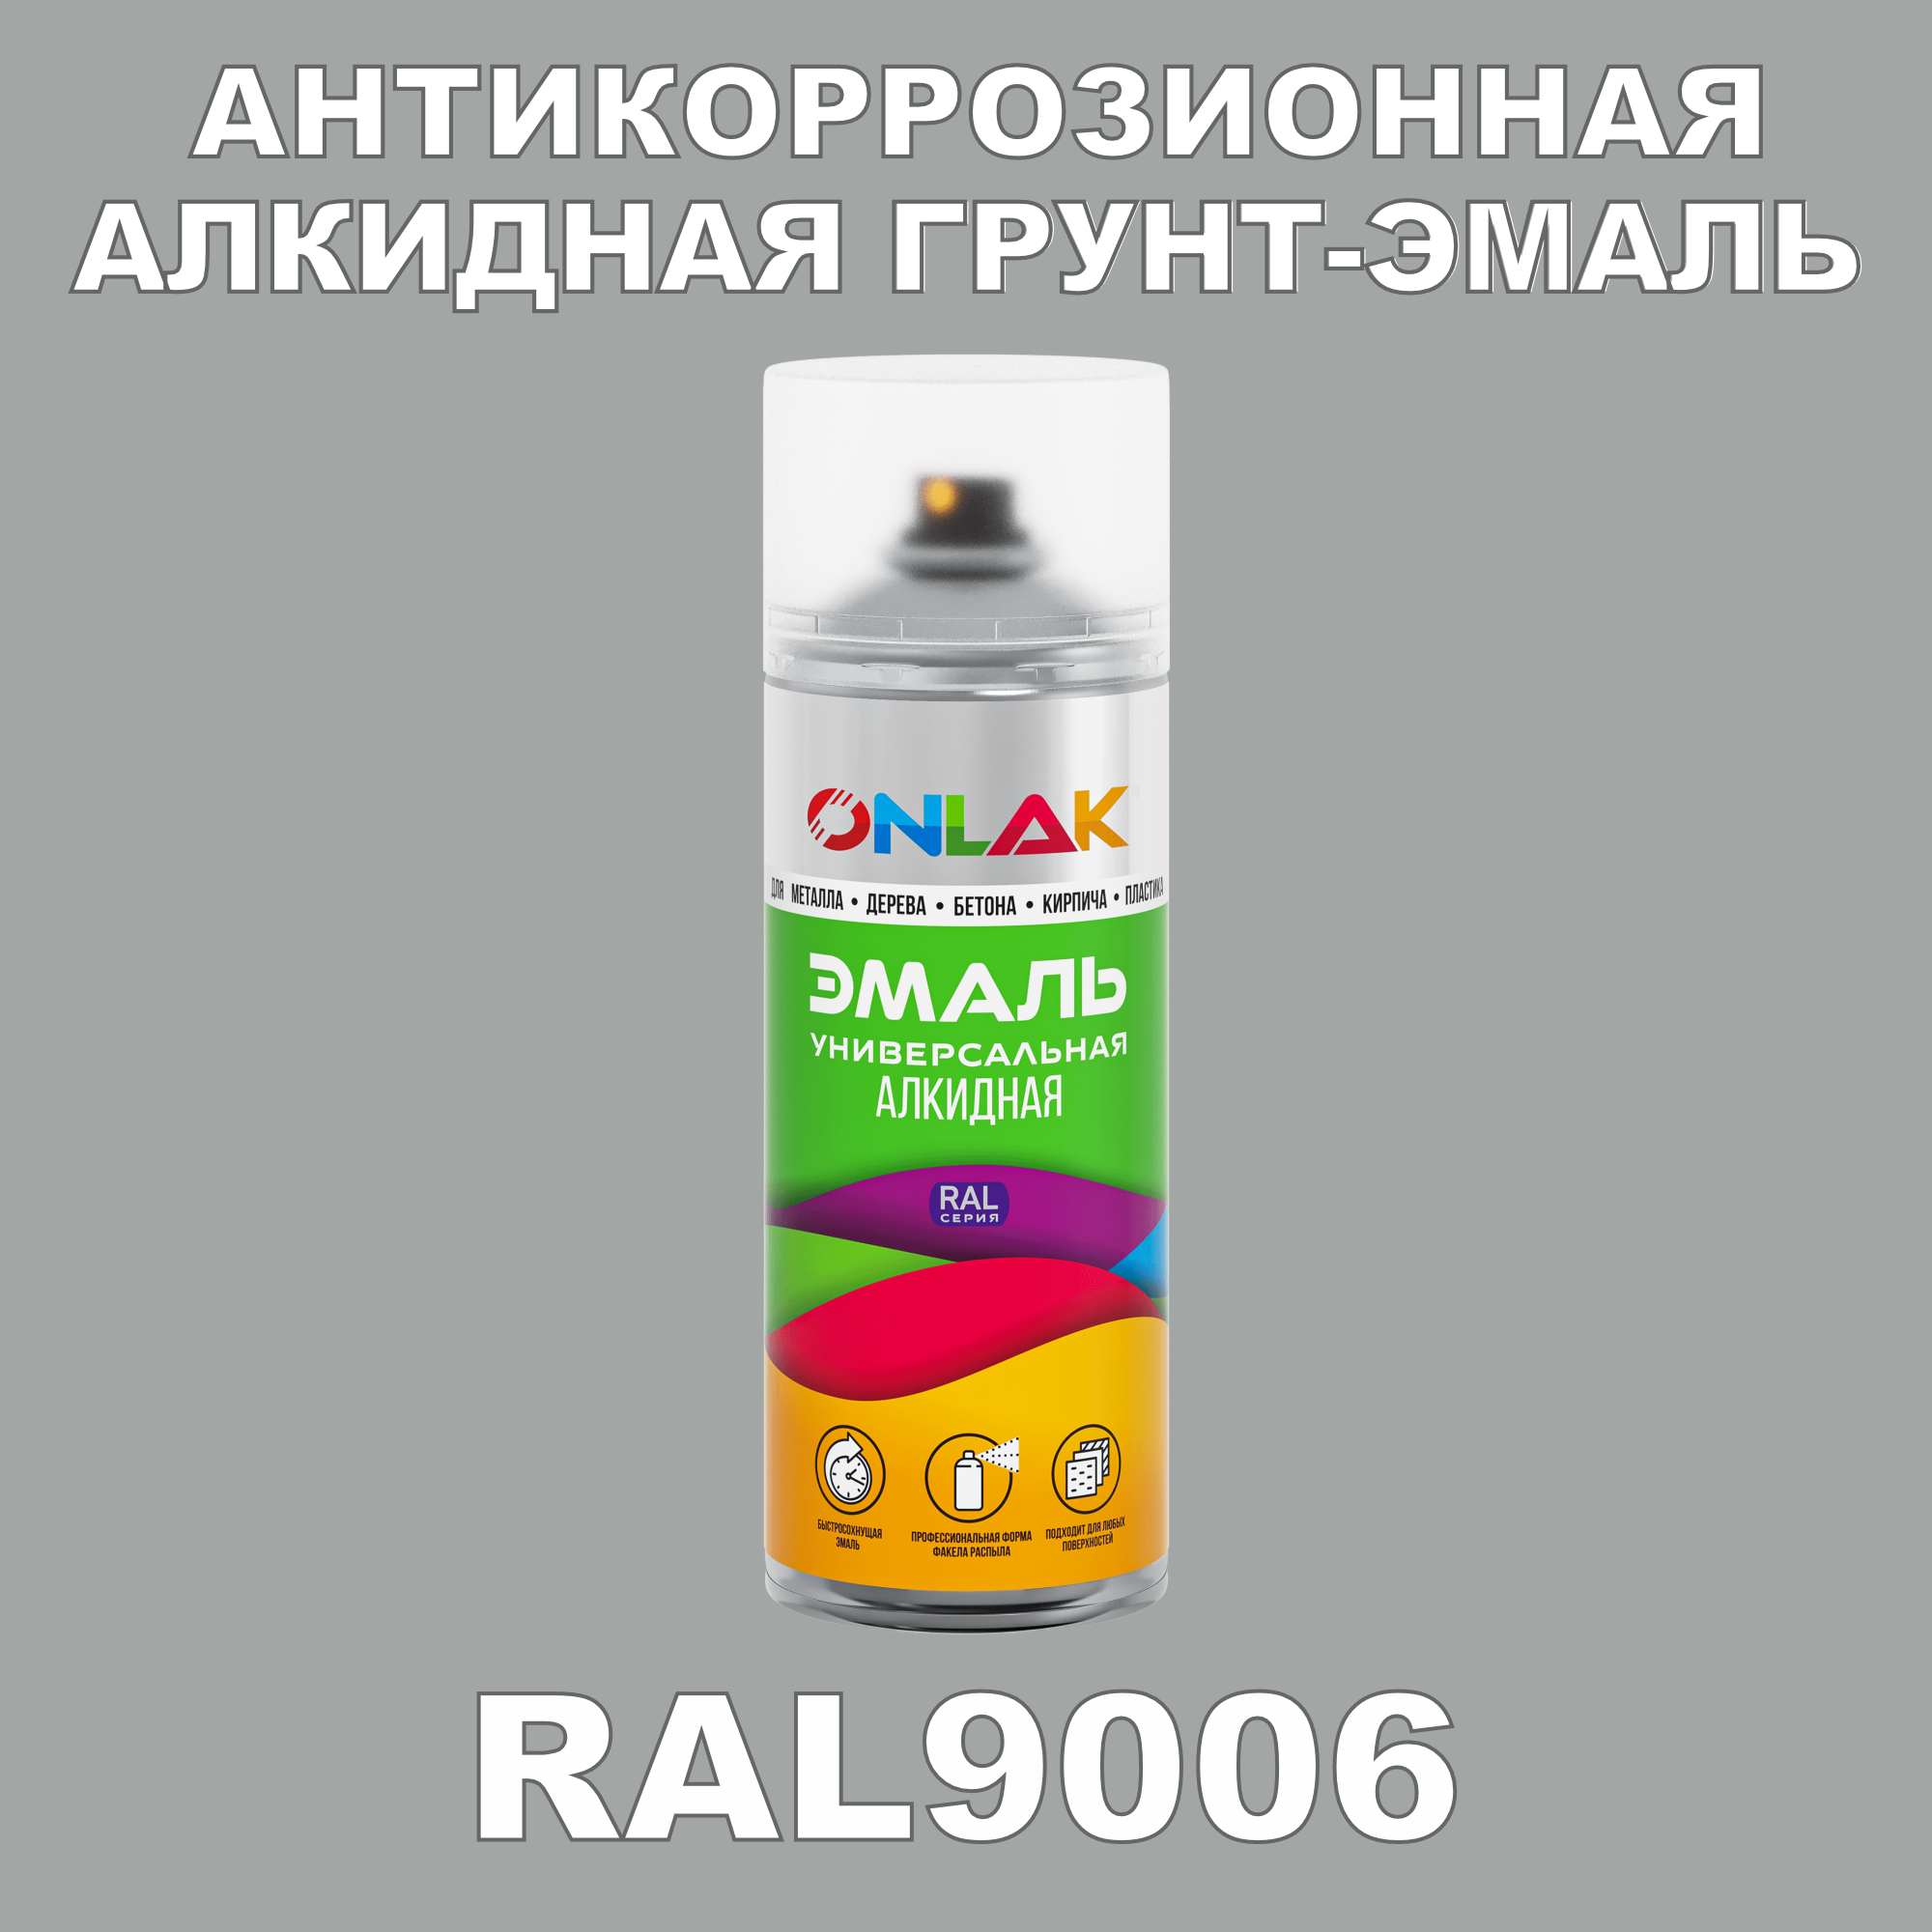 Антикоррозионная грунт-эмаль ONLAK RAL9006 полуматовая для металла и защиты от ржавчины